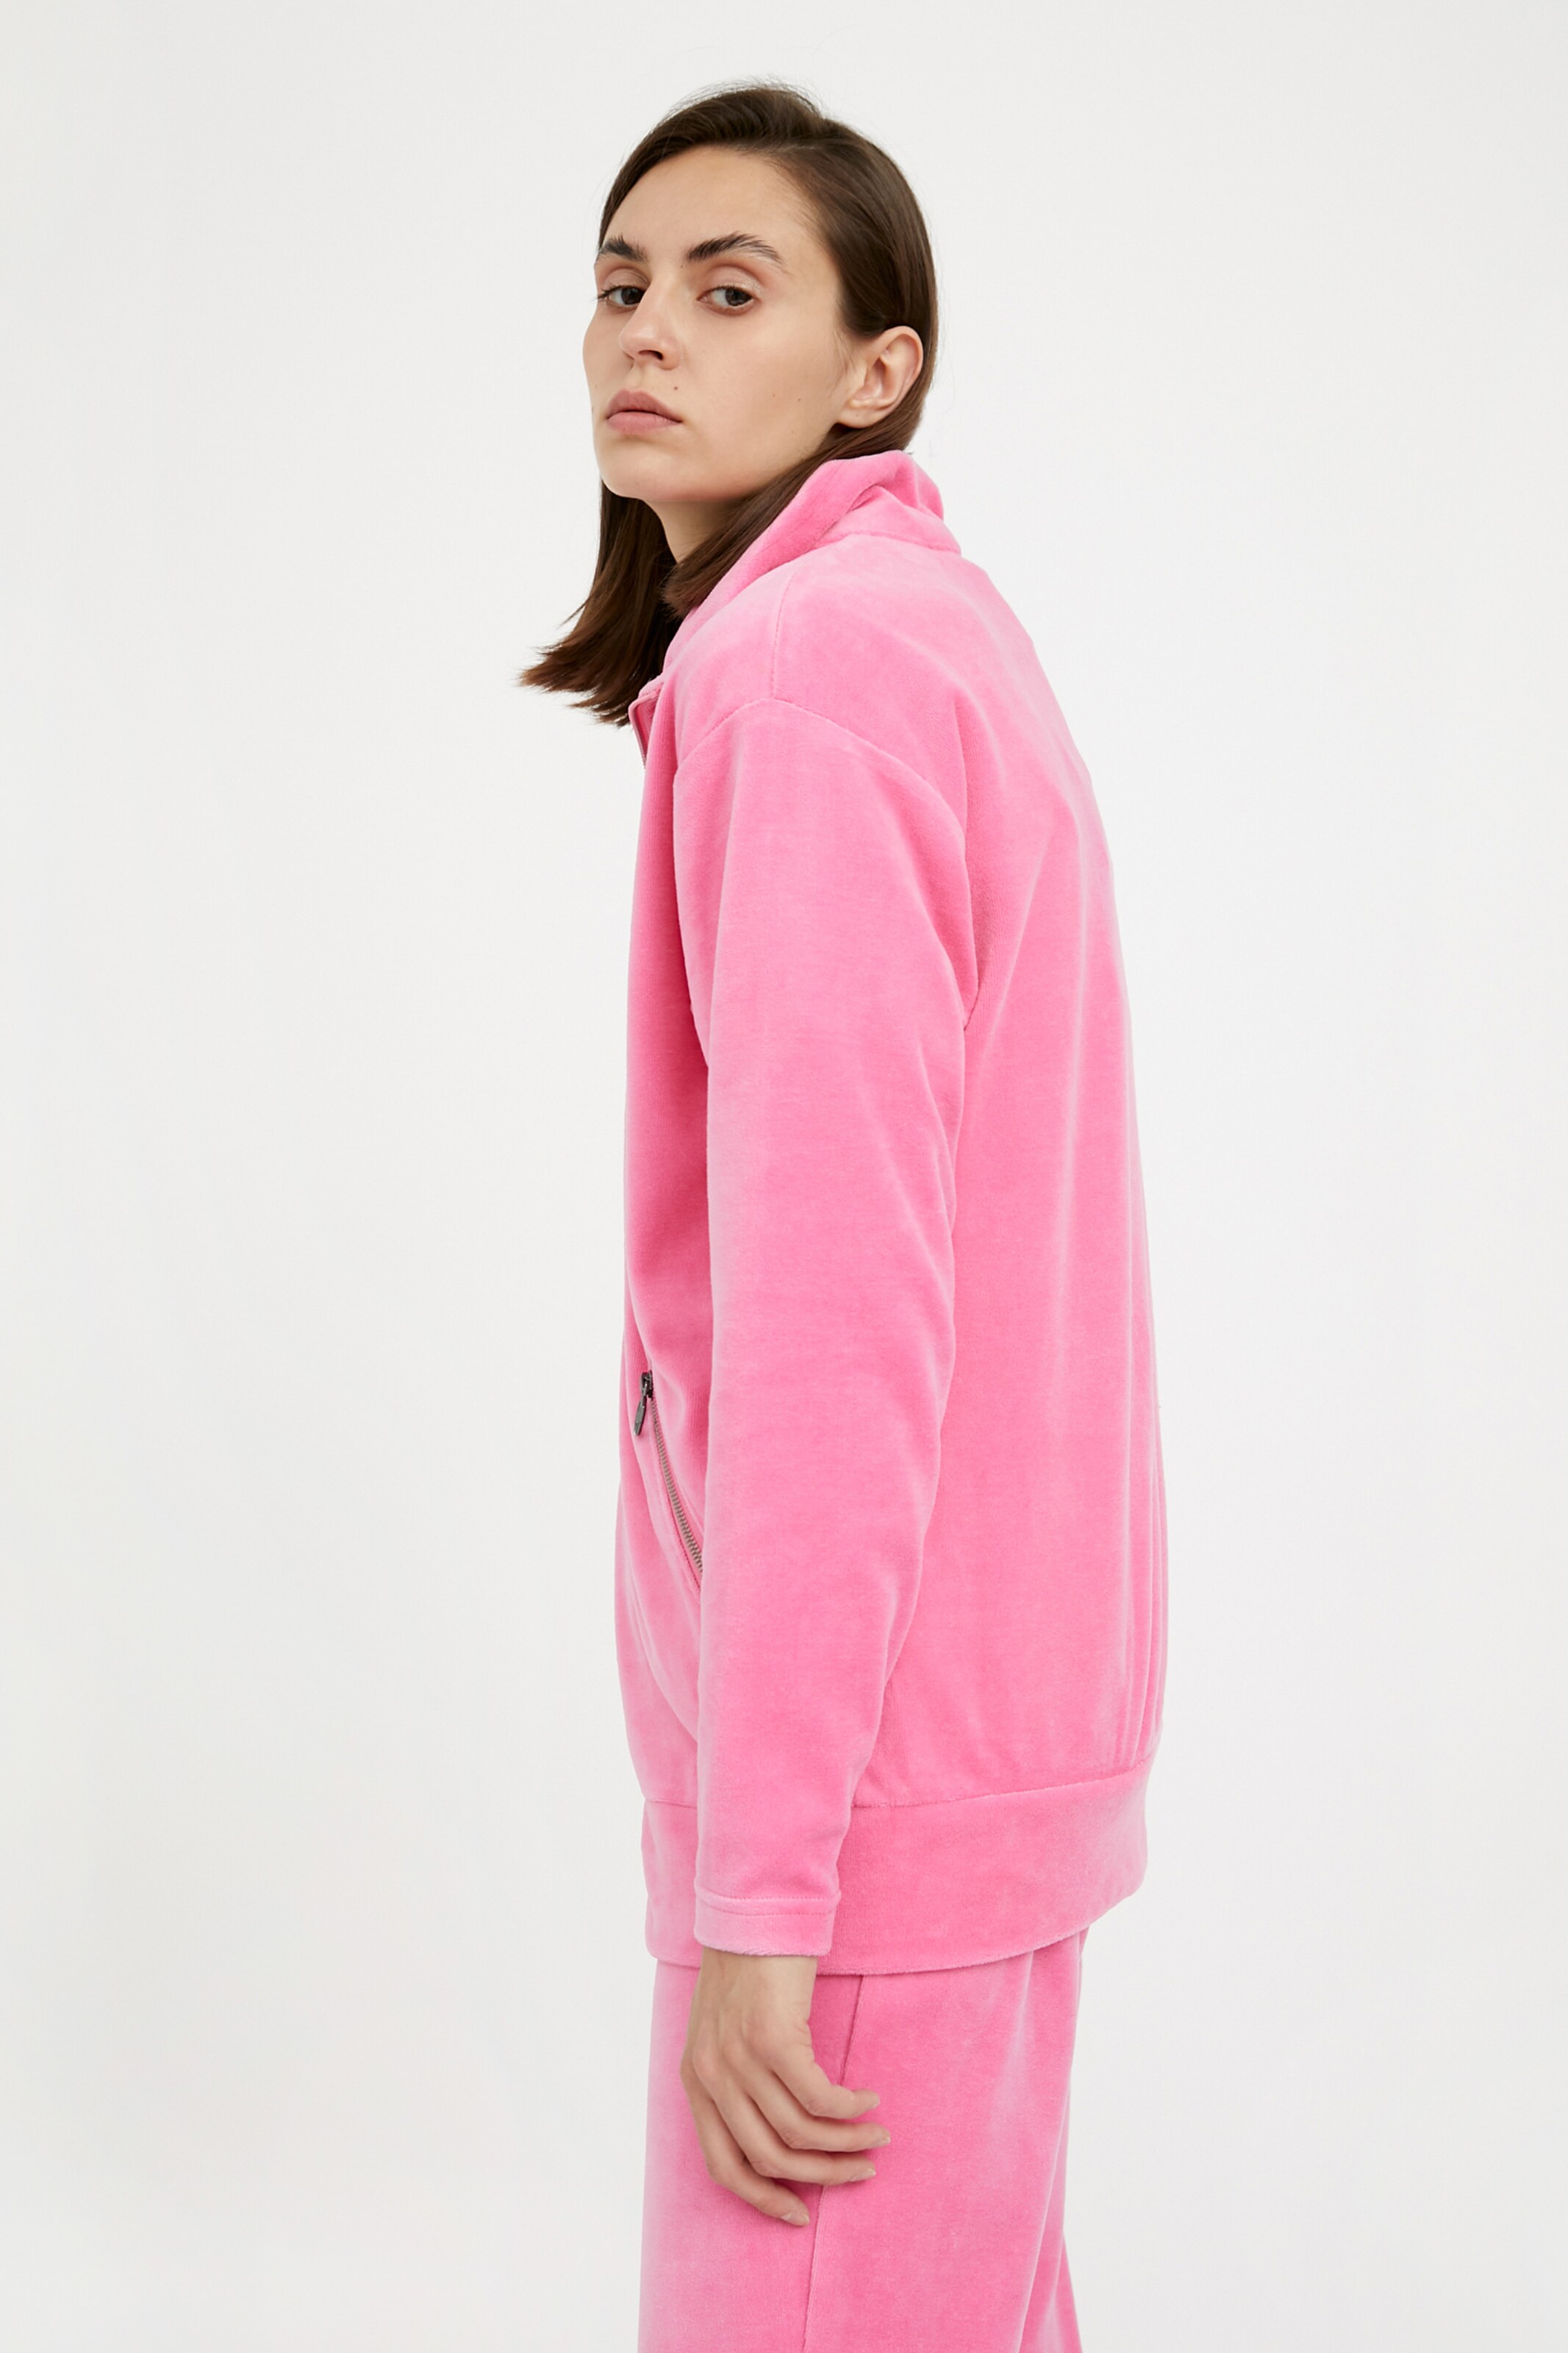 Frauen Sweat Finn Flare Sweatshirt-Jacke in Pink - RA77738